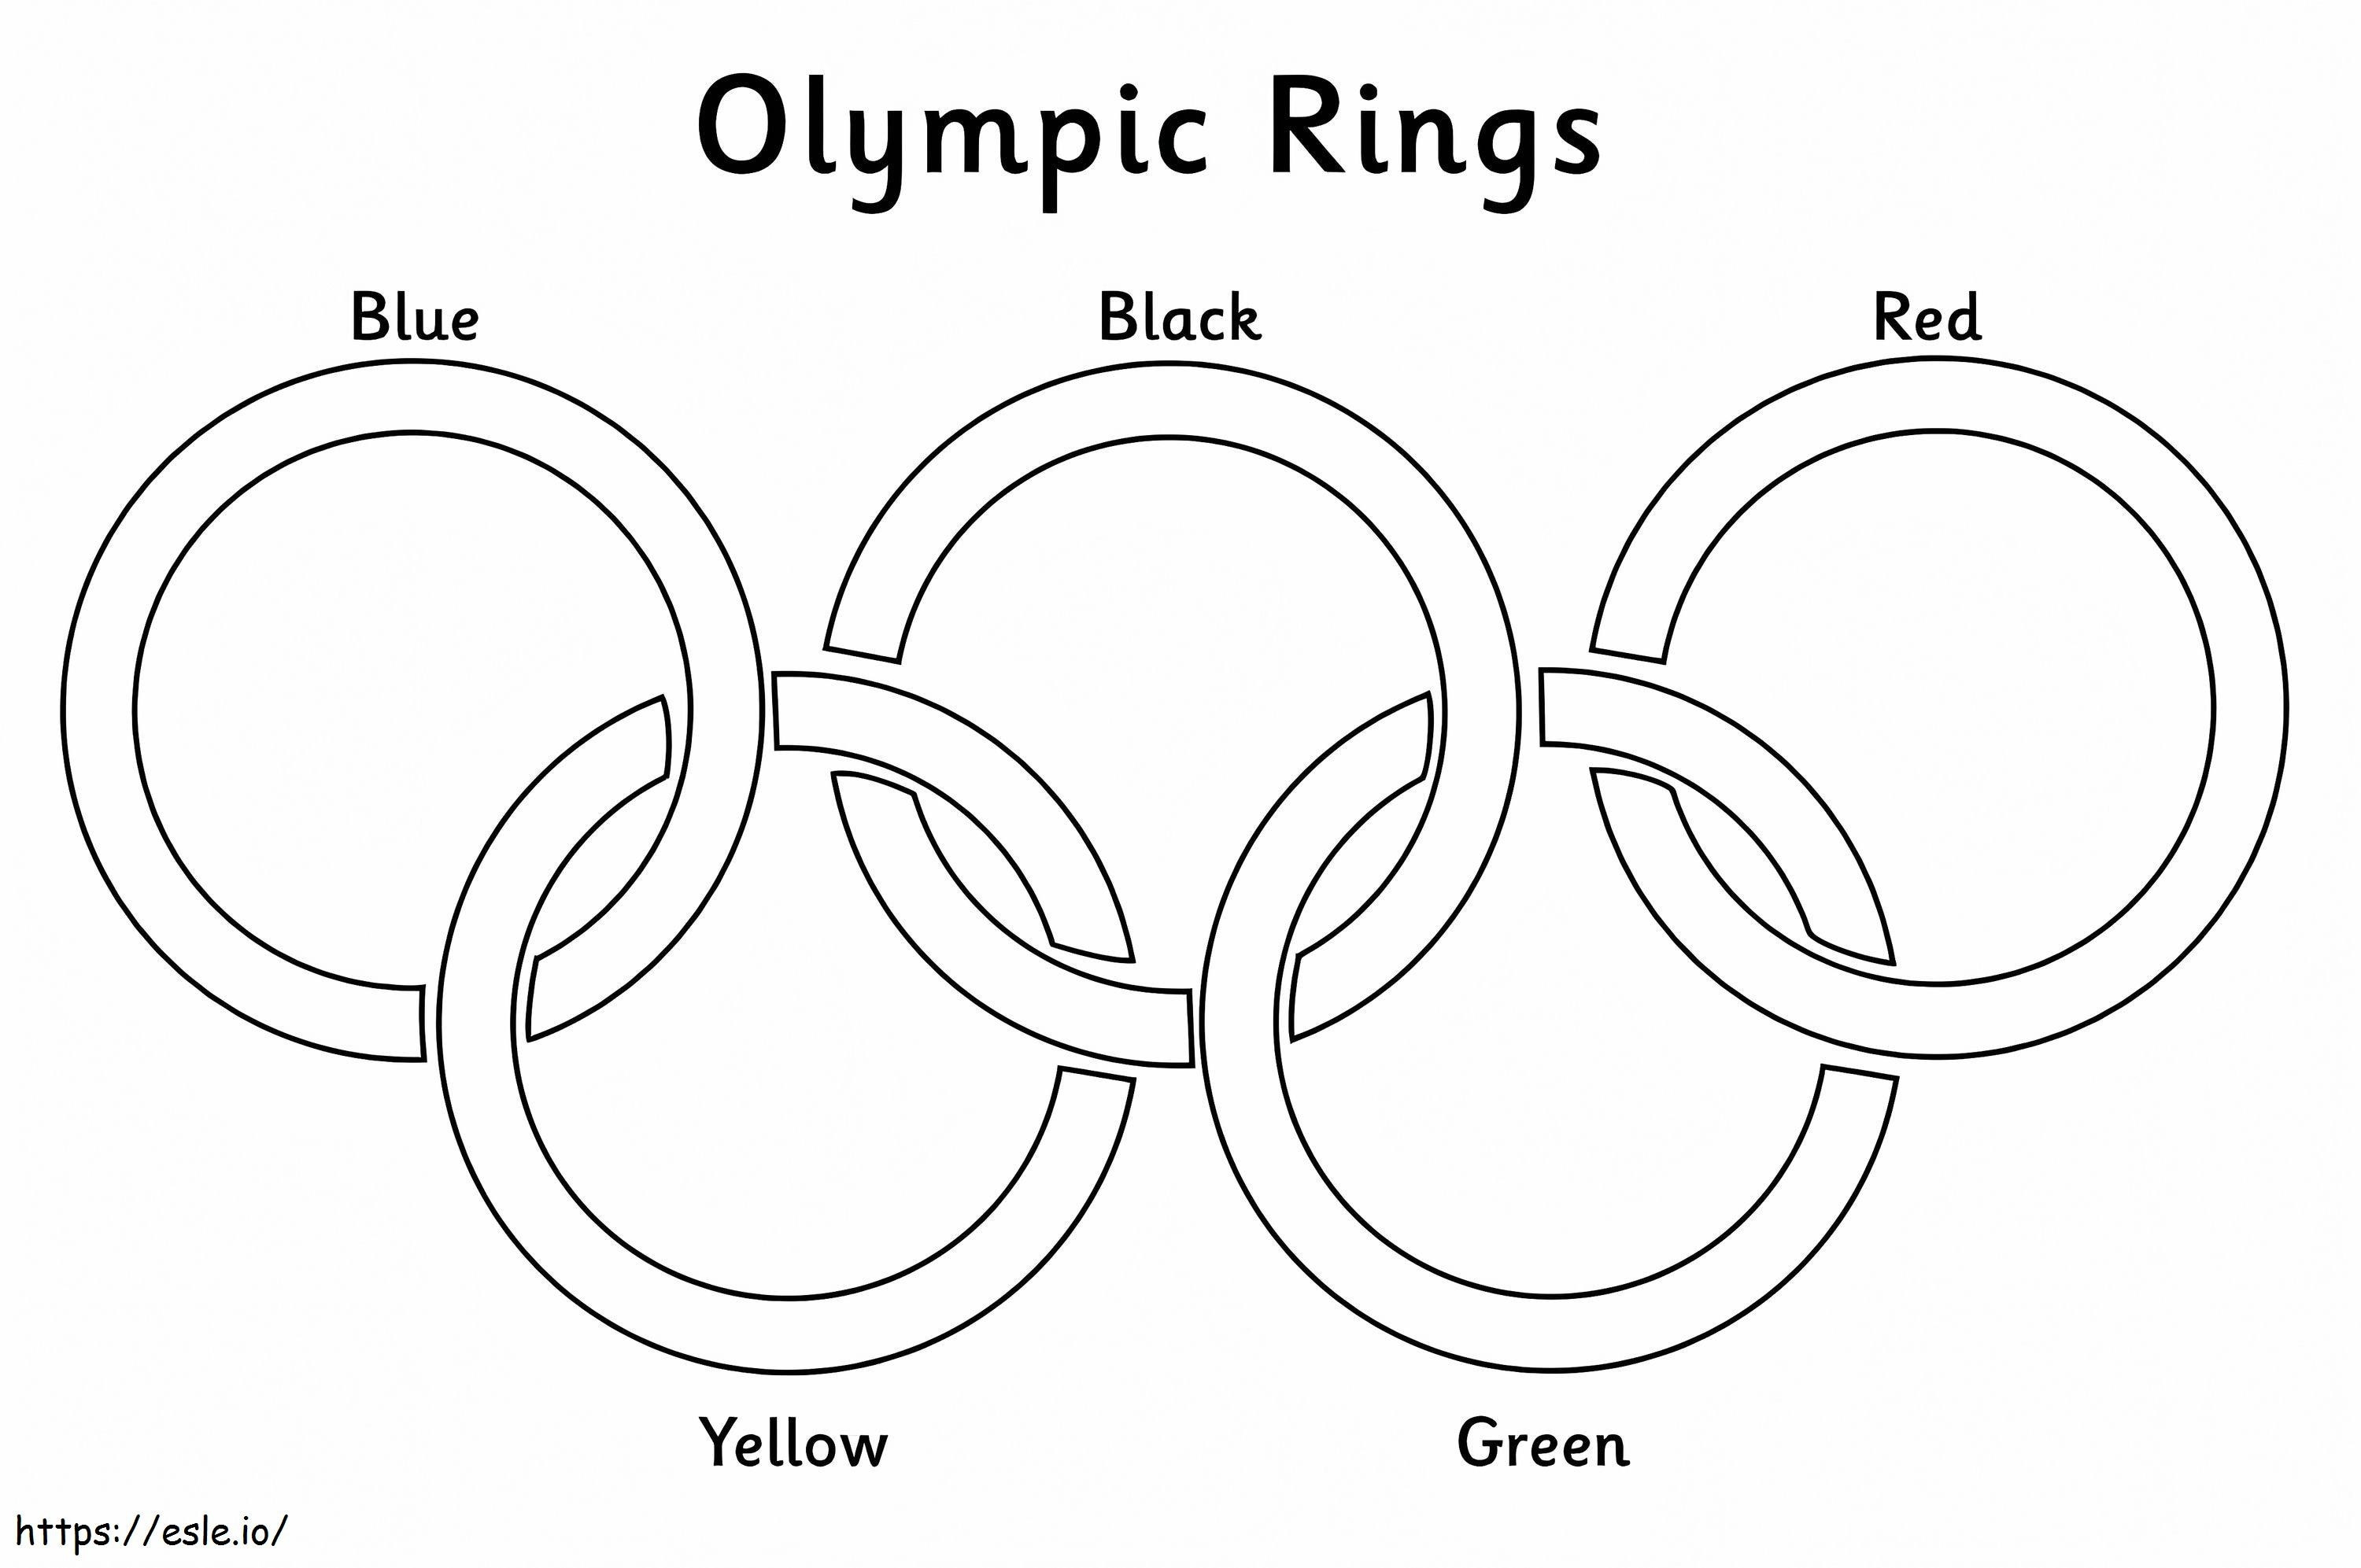 Inele olimpice de colorat